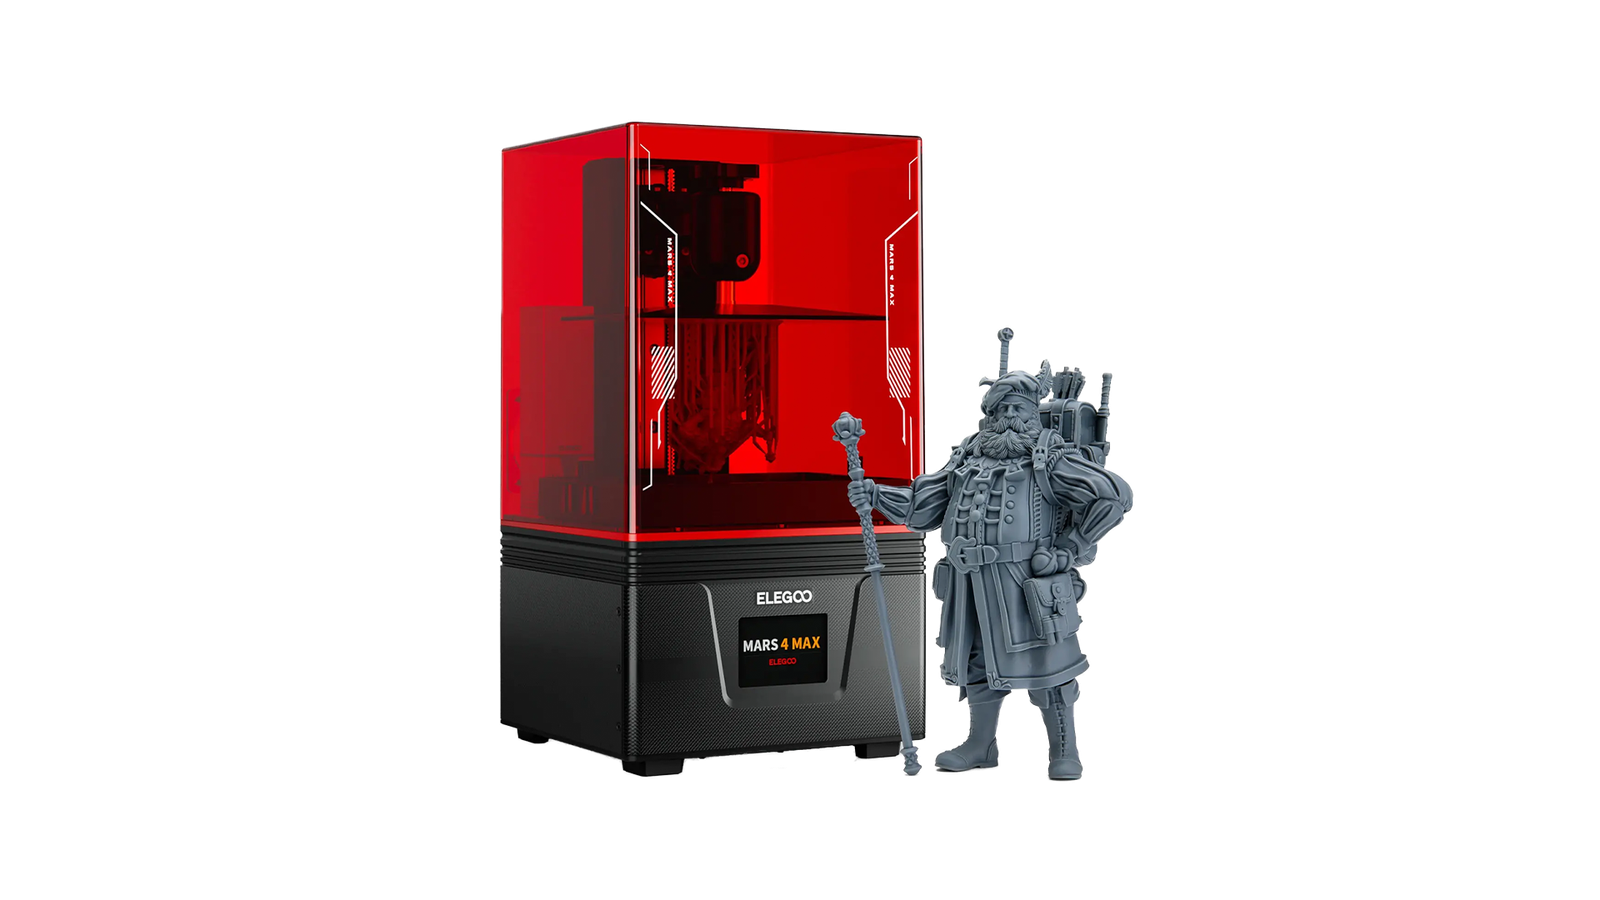 Elegoo Mars 2 Pro - The best 3D printer for resin prints